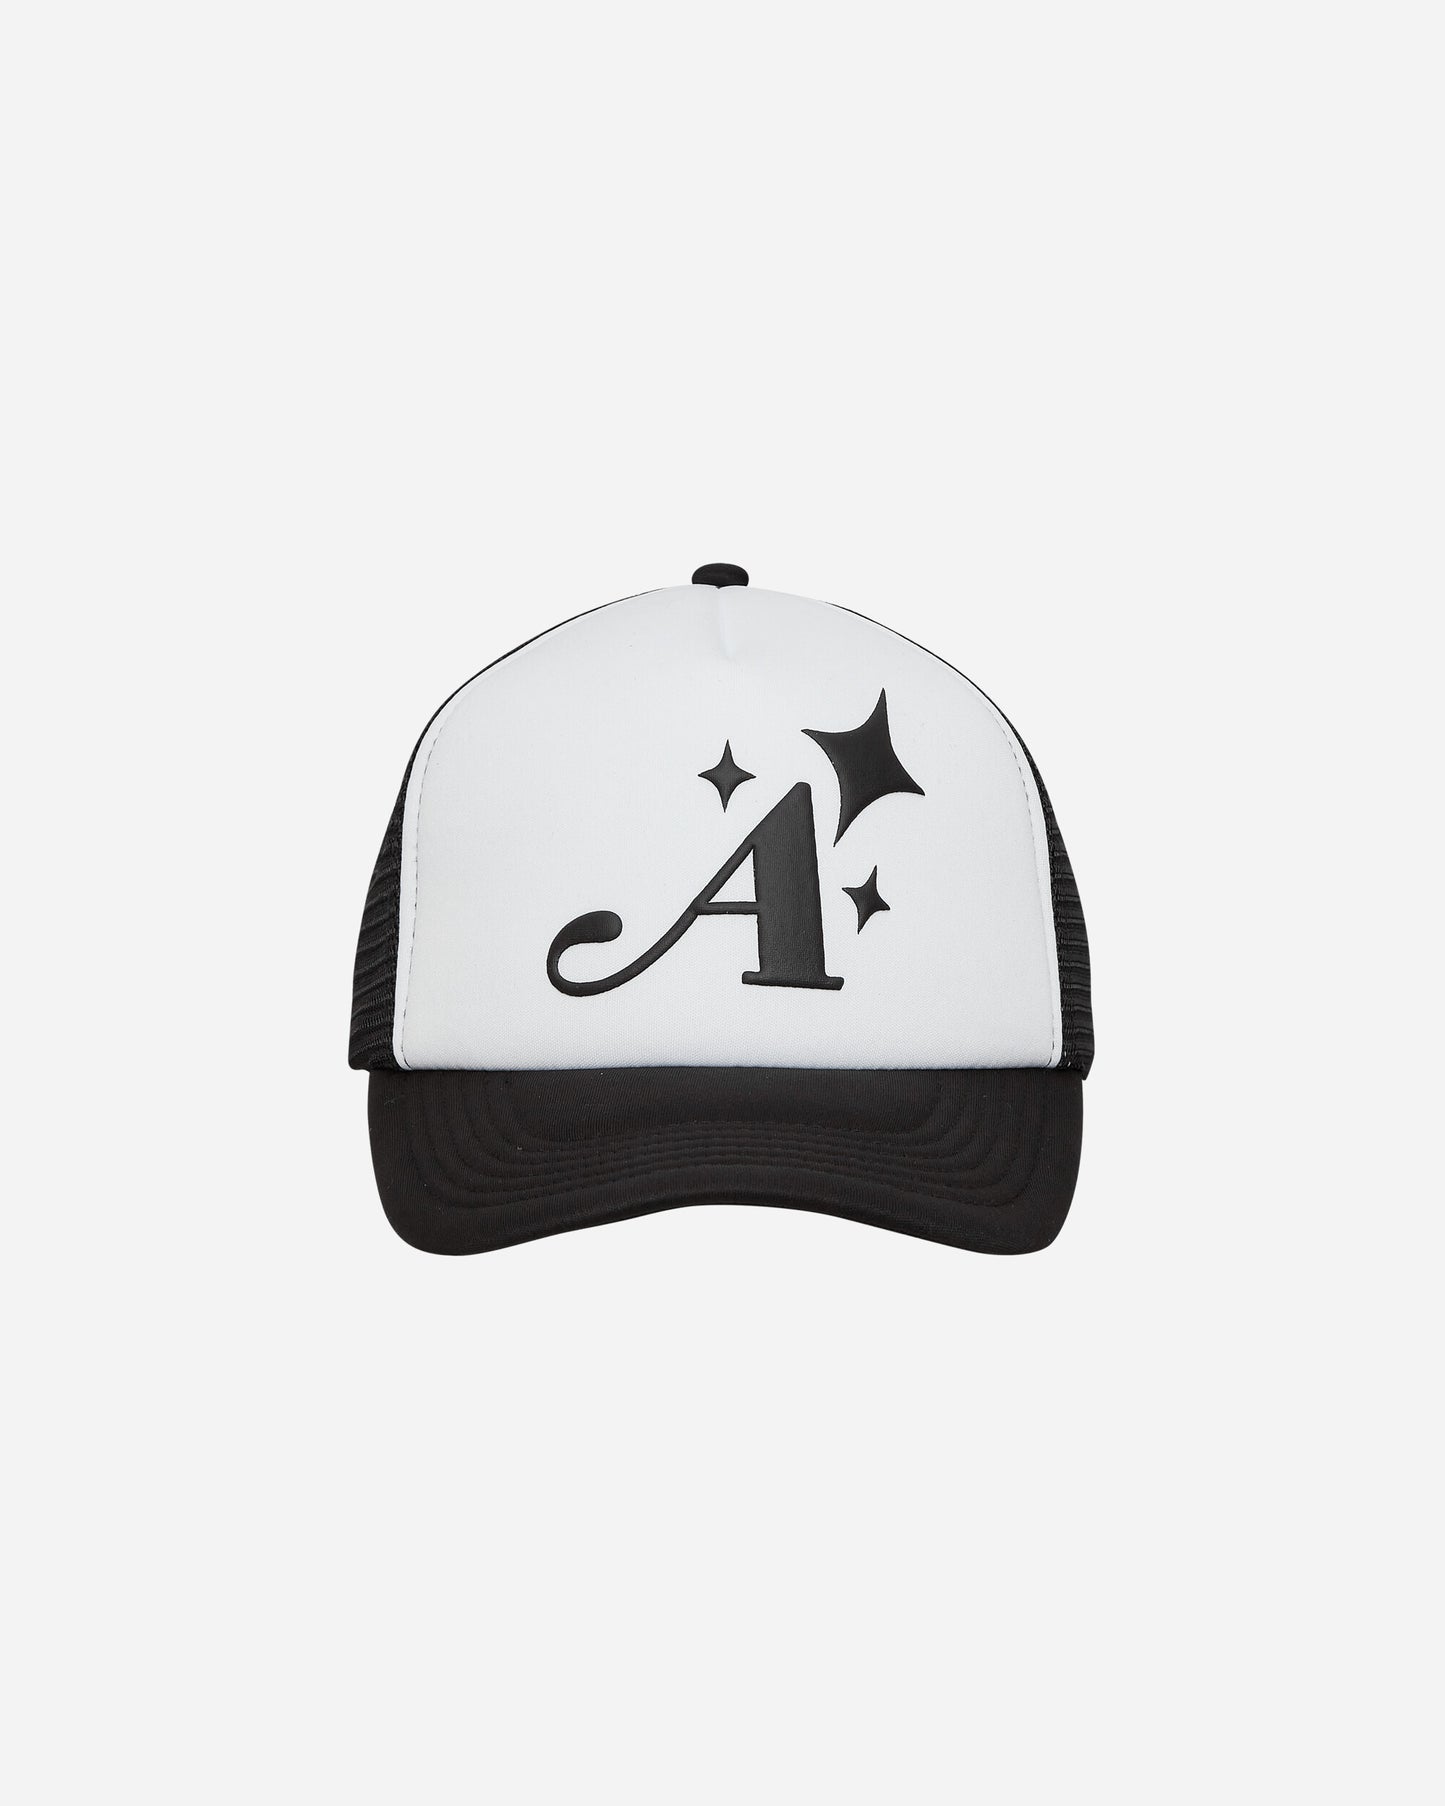 Awake NY A Trucker Hat Black Hats Caps 9031842 BLK